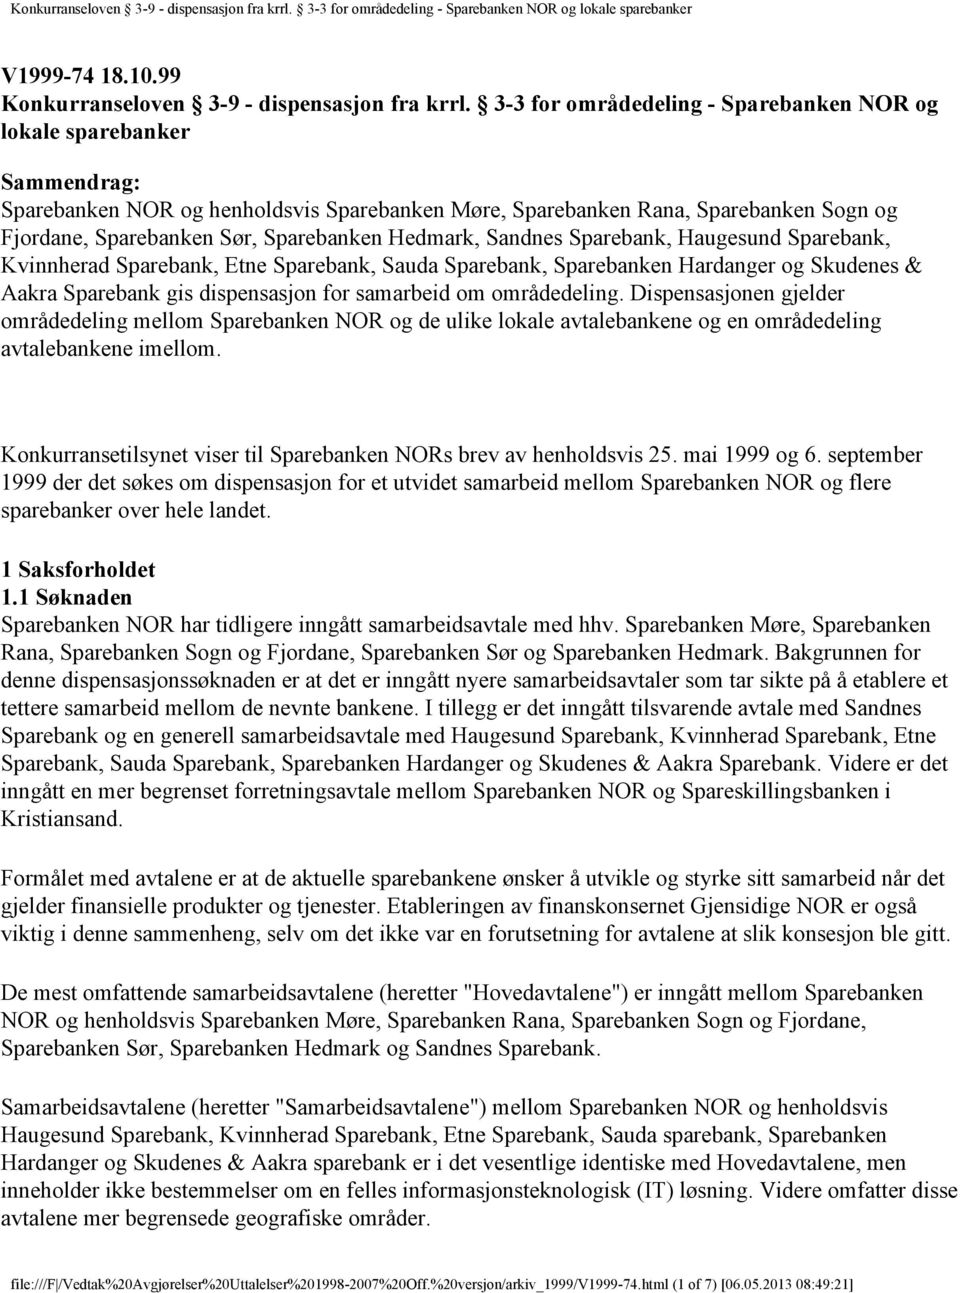 Hedmark, Sandnes Sparebank, Haugesund Sparebank, Kvinnherad Sparebank, Etne Sparebank, Sauda Sparebank, Sparebanken Hardanger og Skudenes & Aakra Sparebank gis dispensasjon for samarbeid om